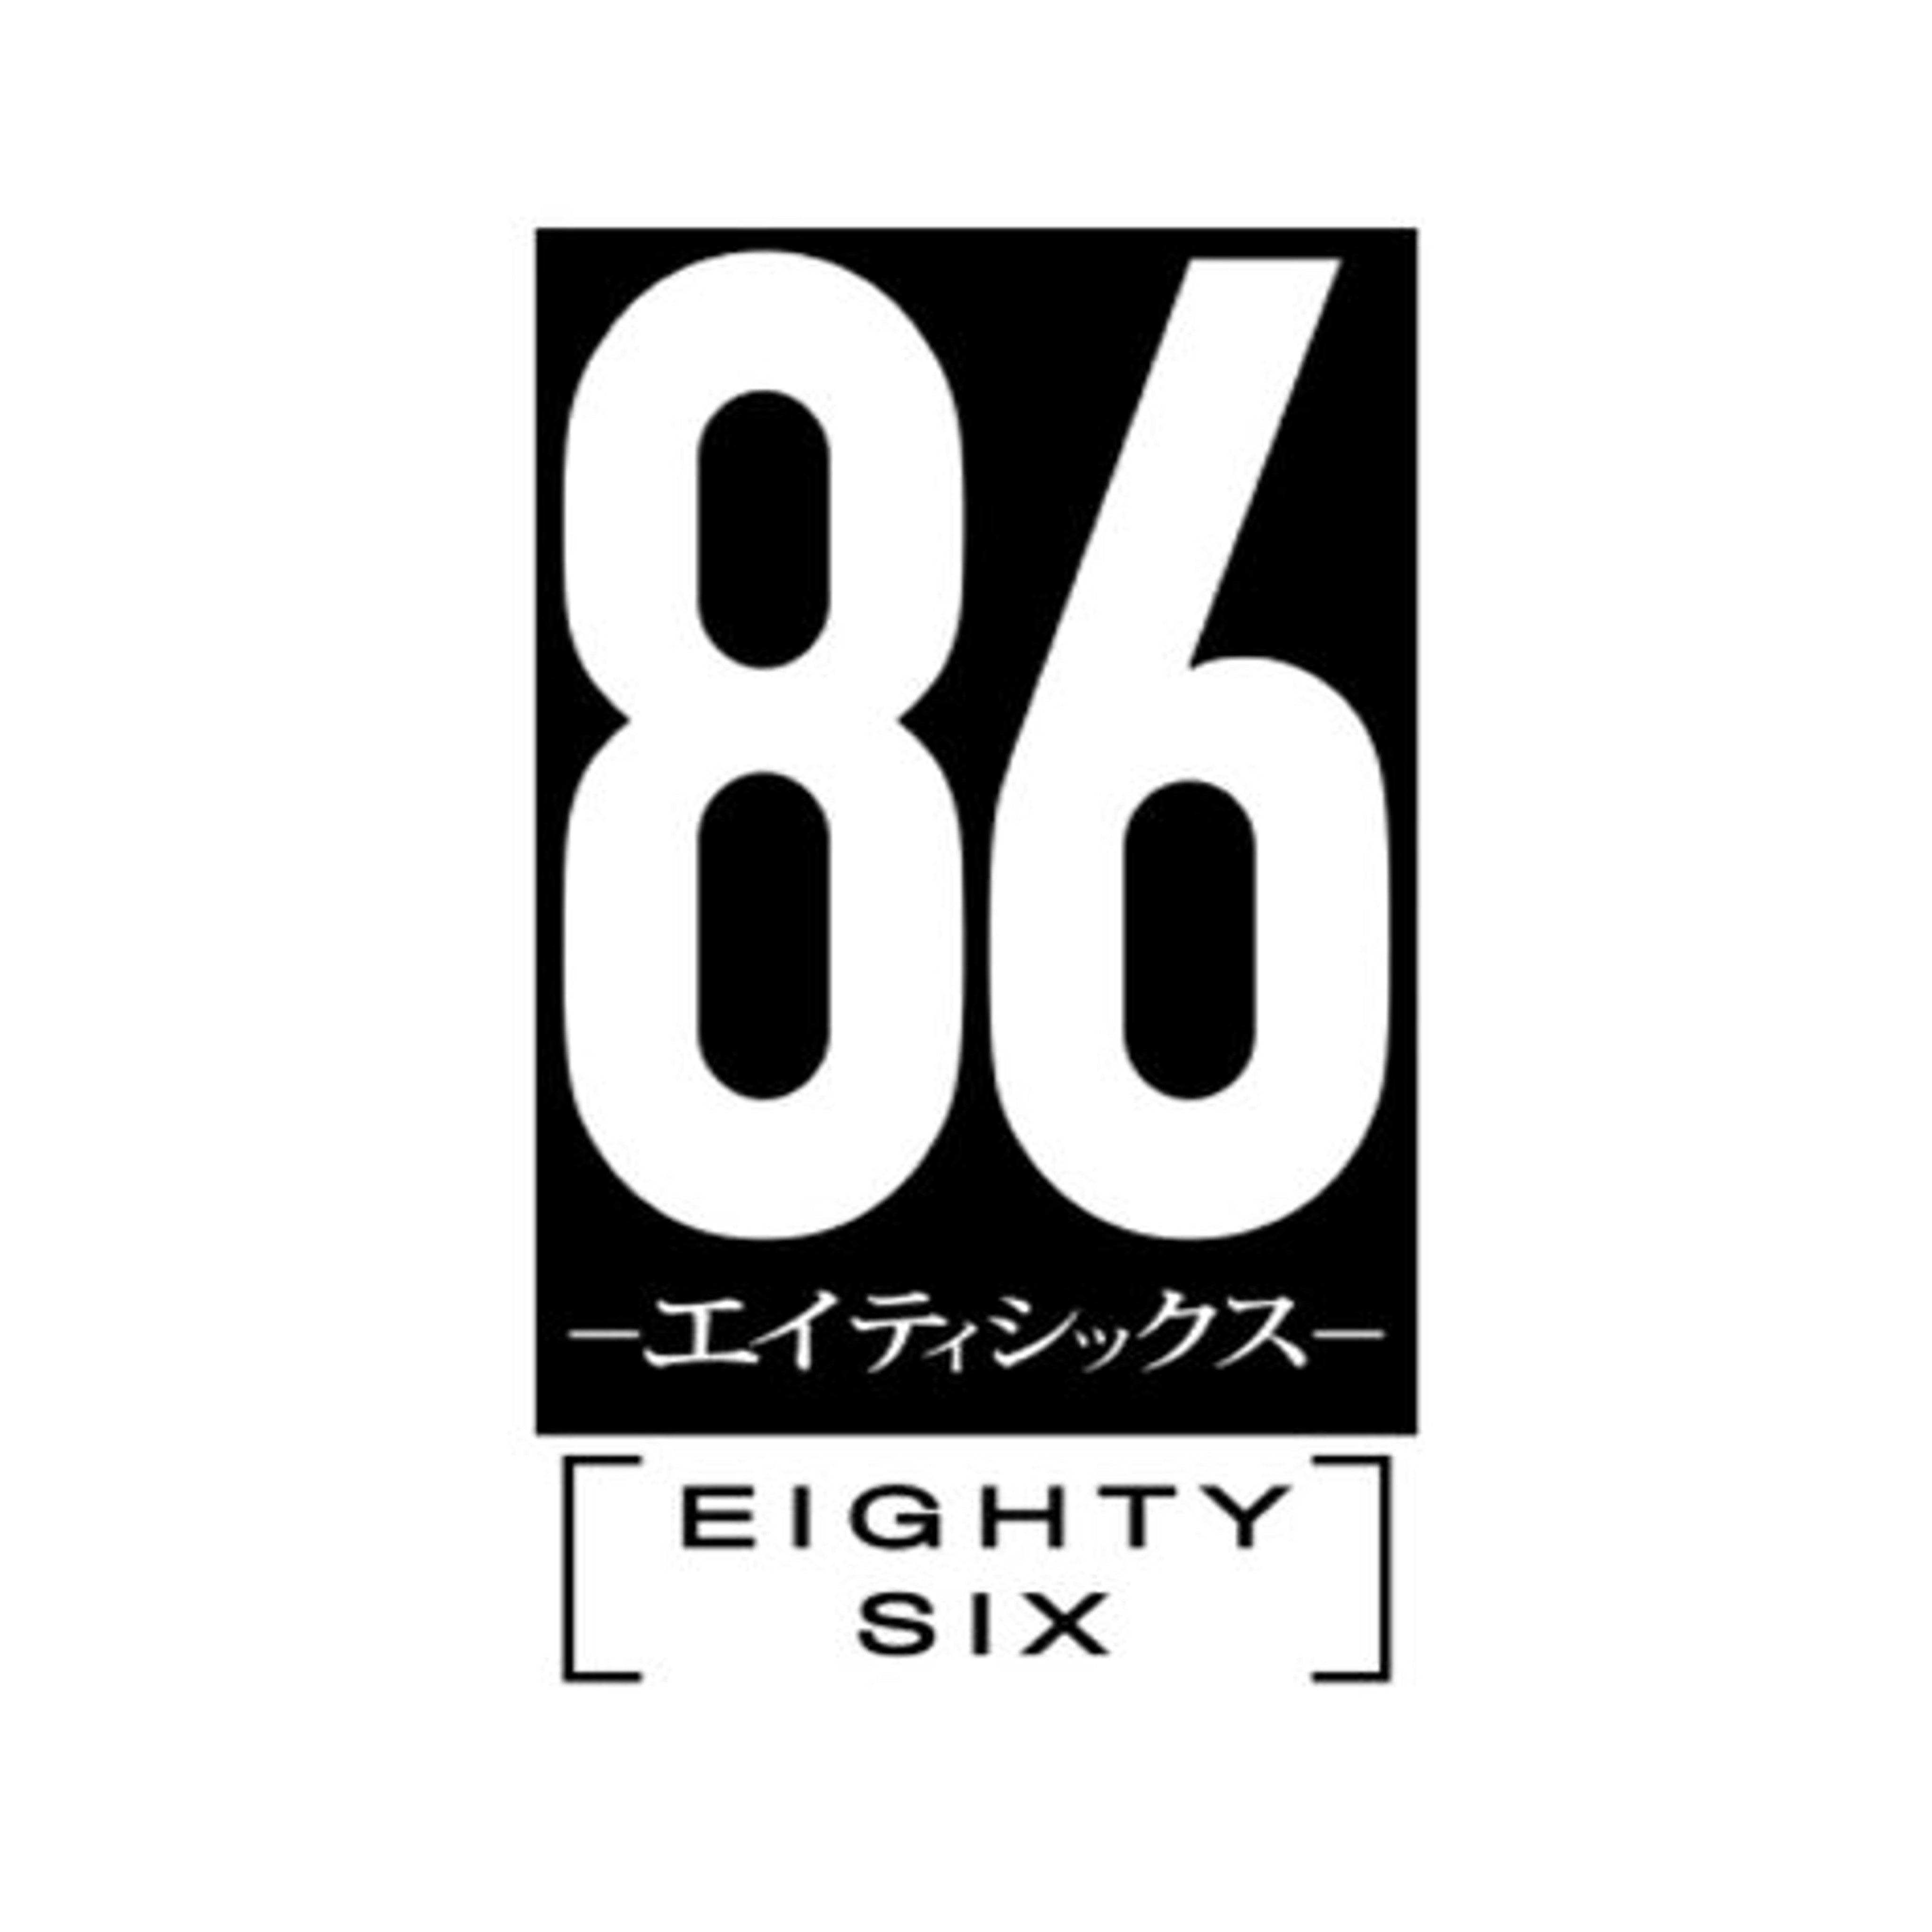 86 - Eighty Six